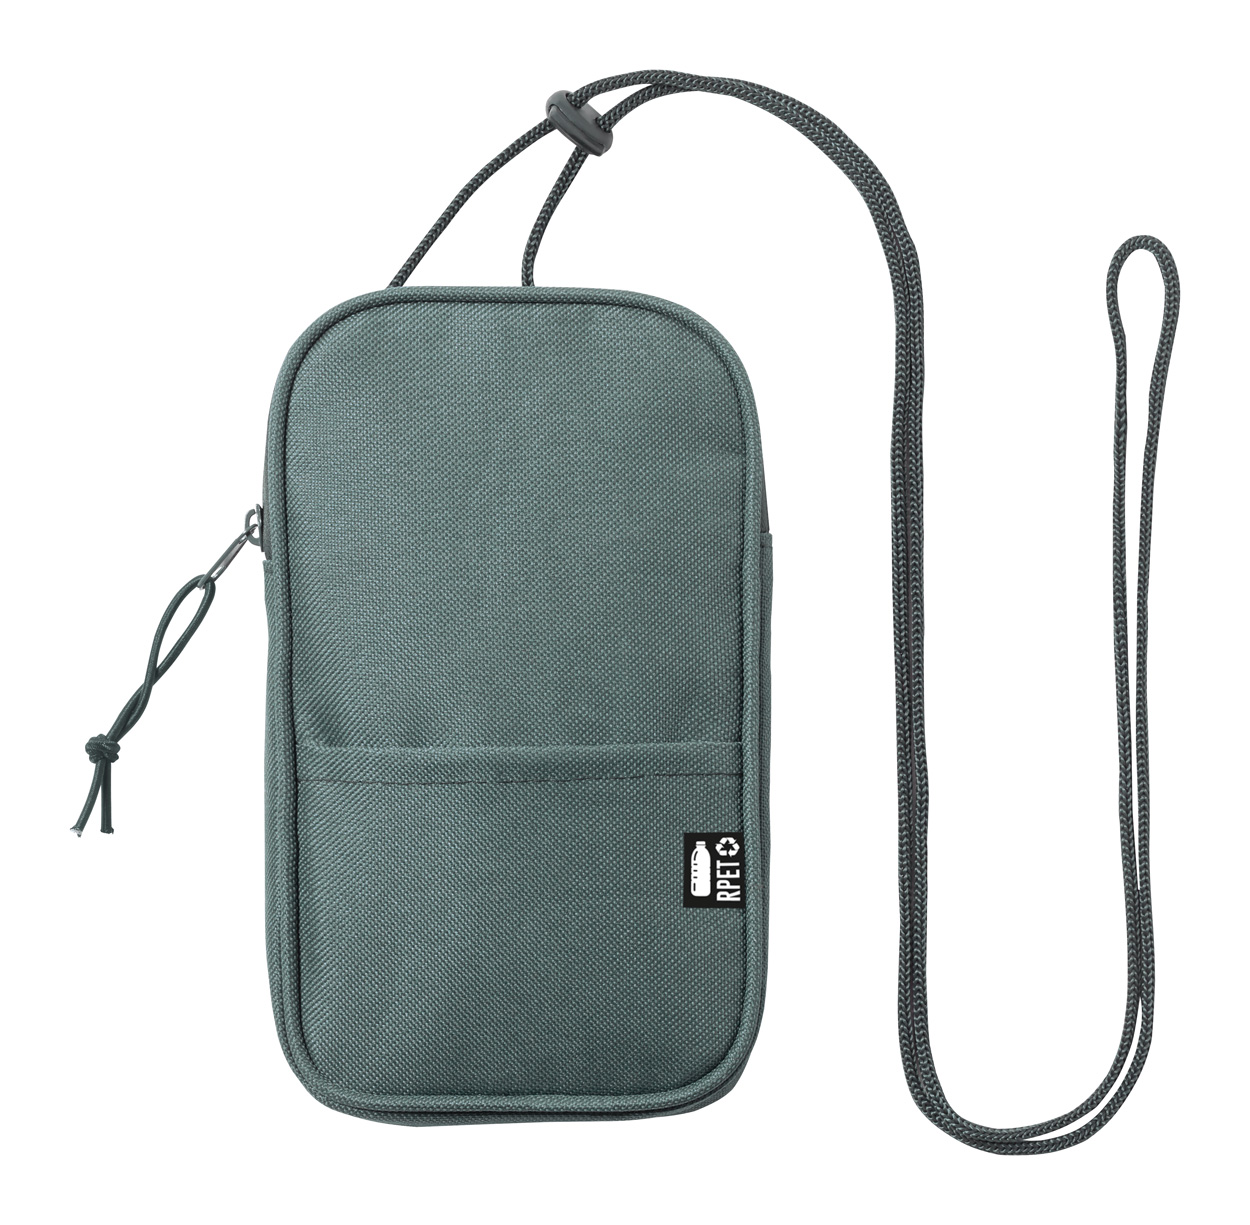 Landry RPET shoulder bag - grey